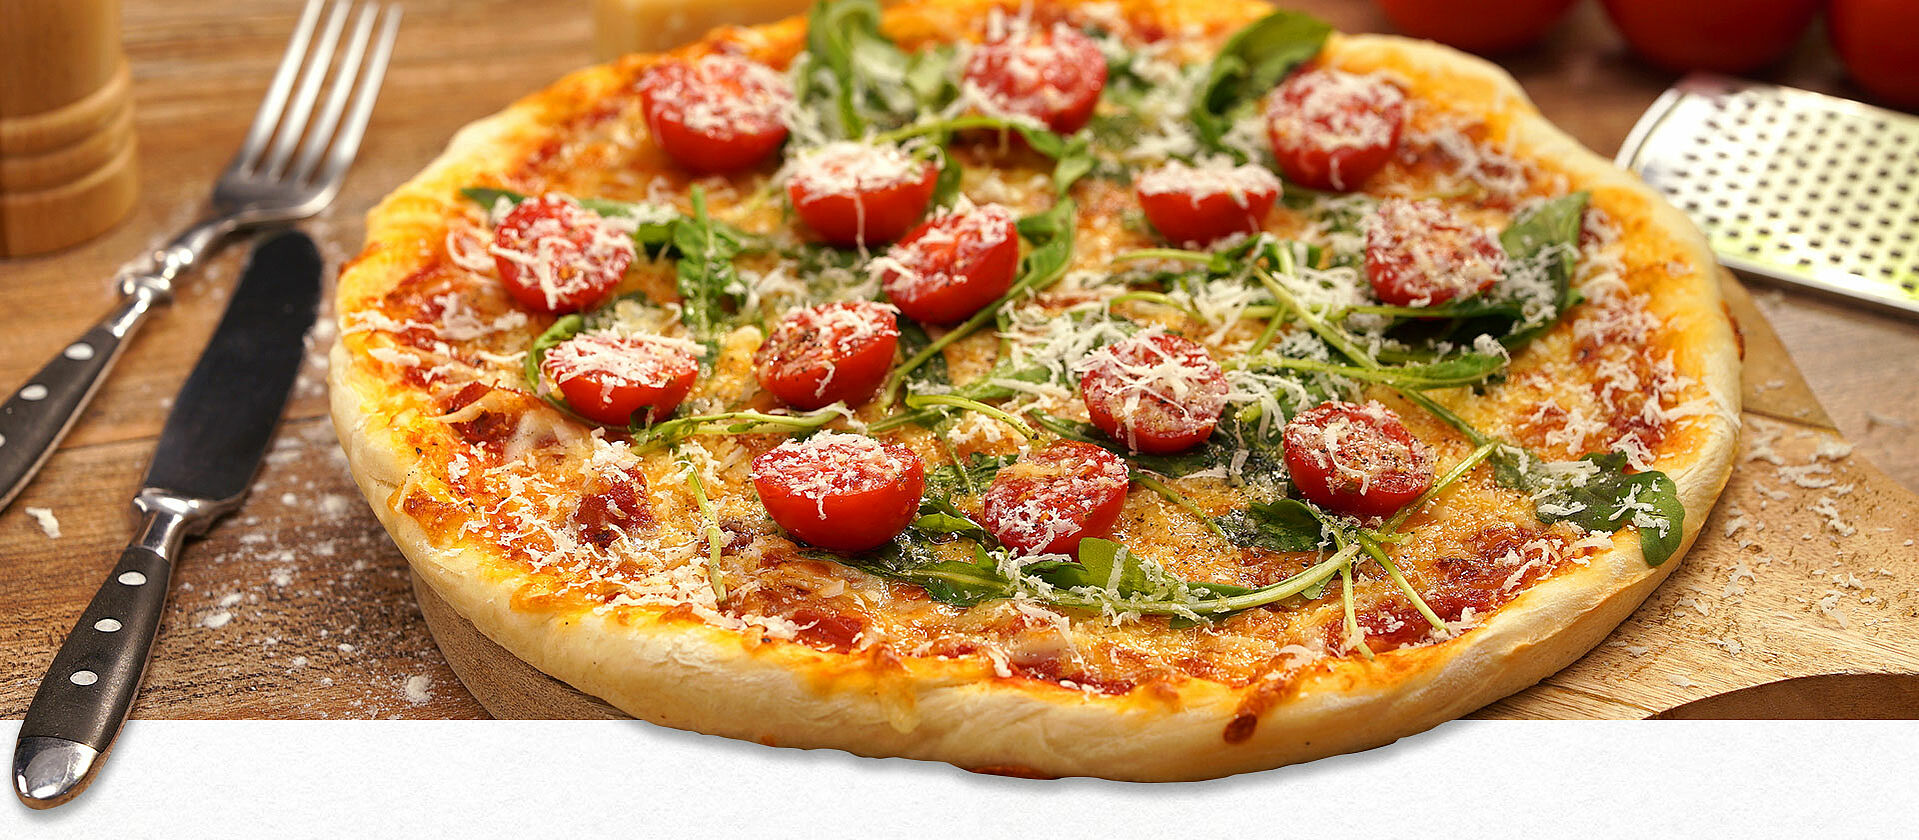 Selbstgemachte Pizza mit Rucola, Tomaten und geriebenem Käse